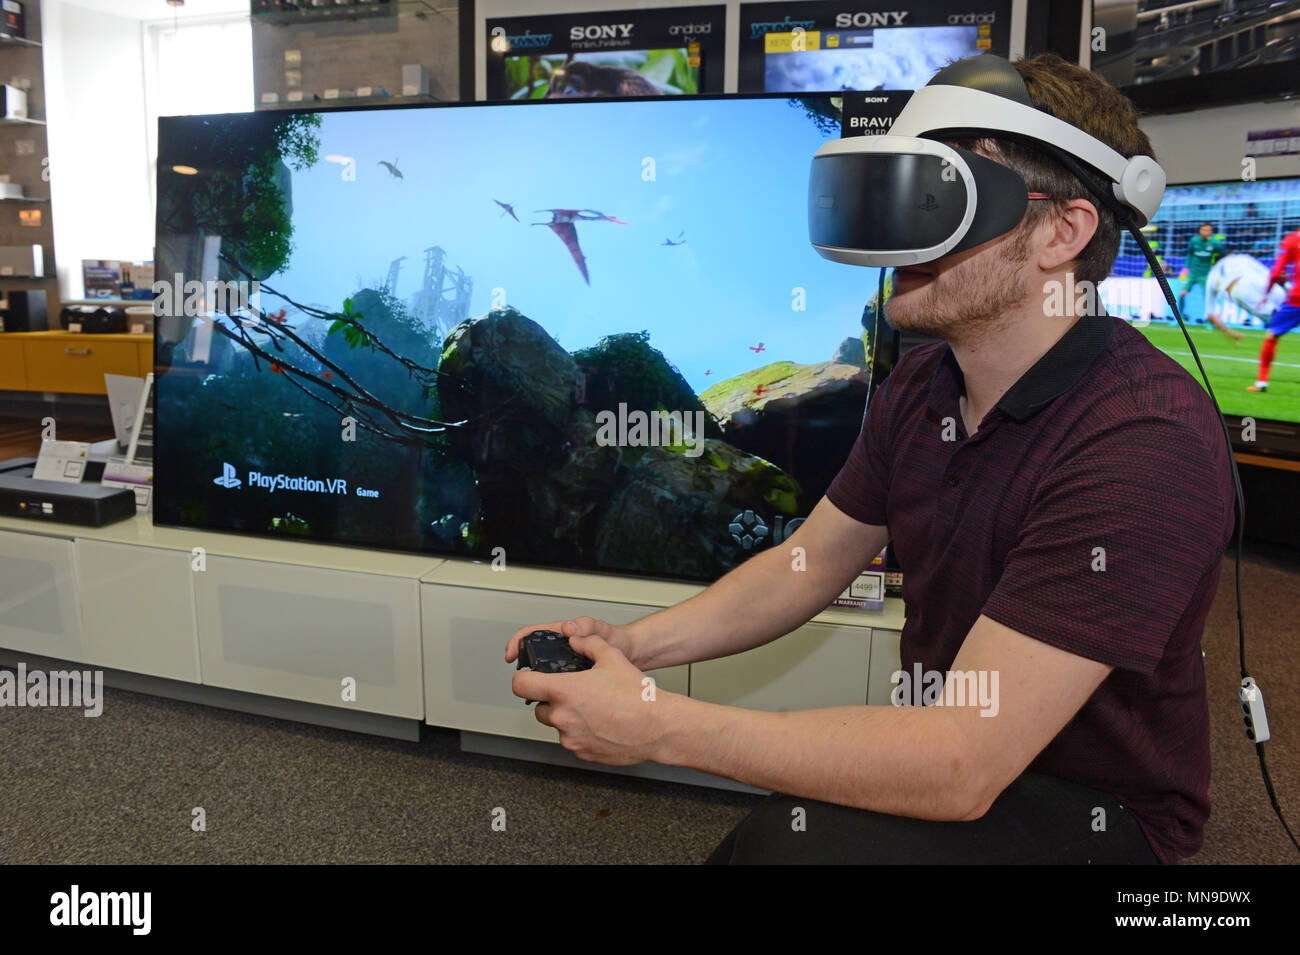 L'homme dans un magasin de détail portant un casque VR Sony Playstation  avec contrôleur et jeu sur Sony TV Photo Stock - Alamy